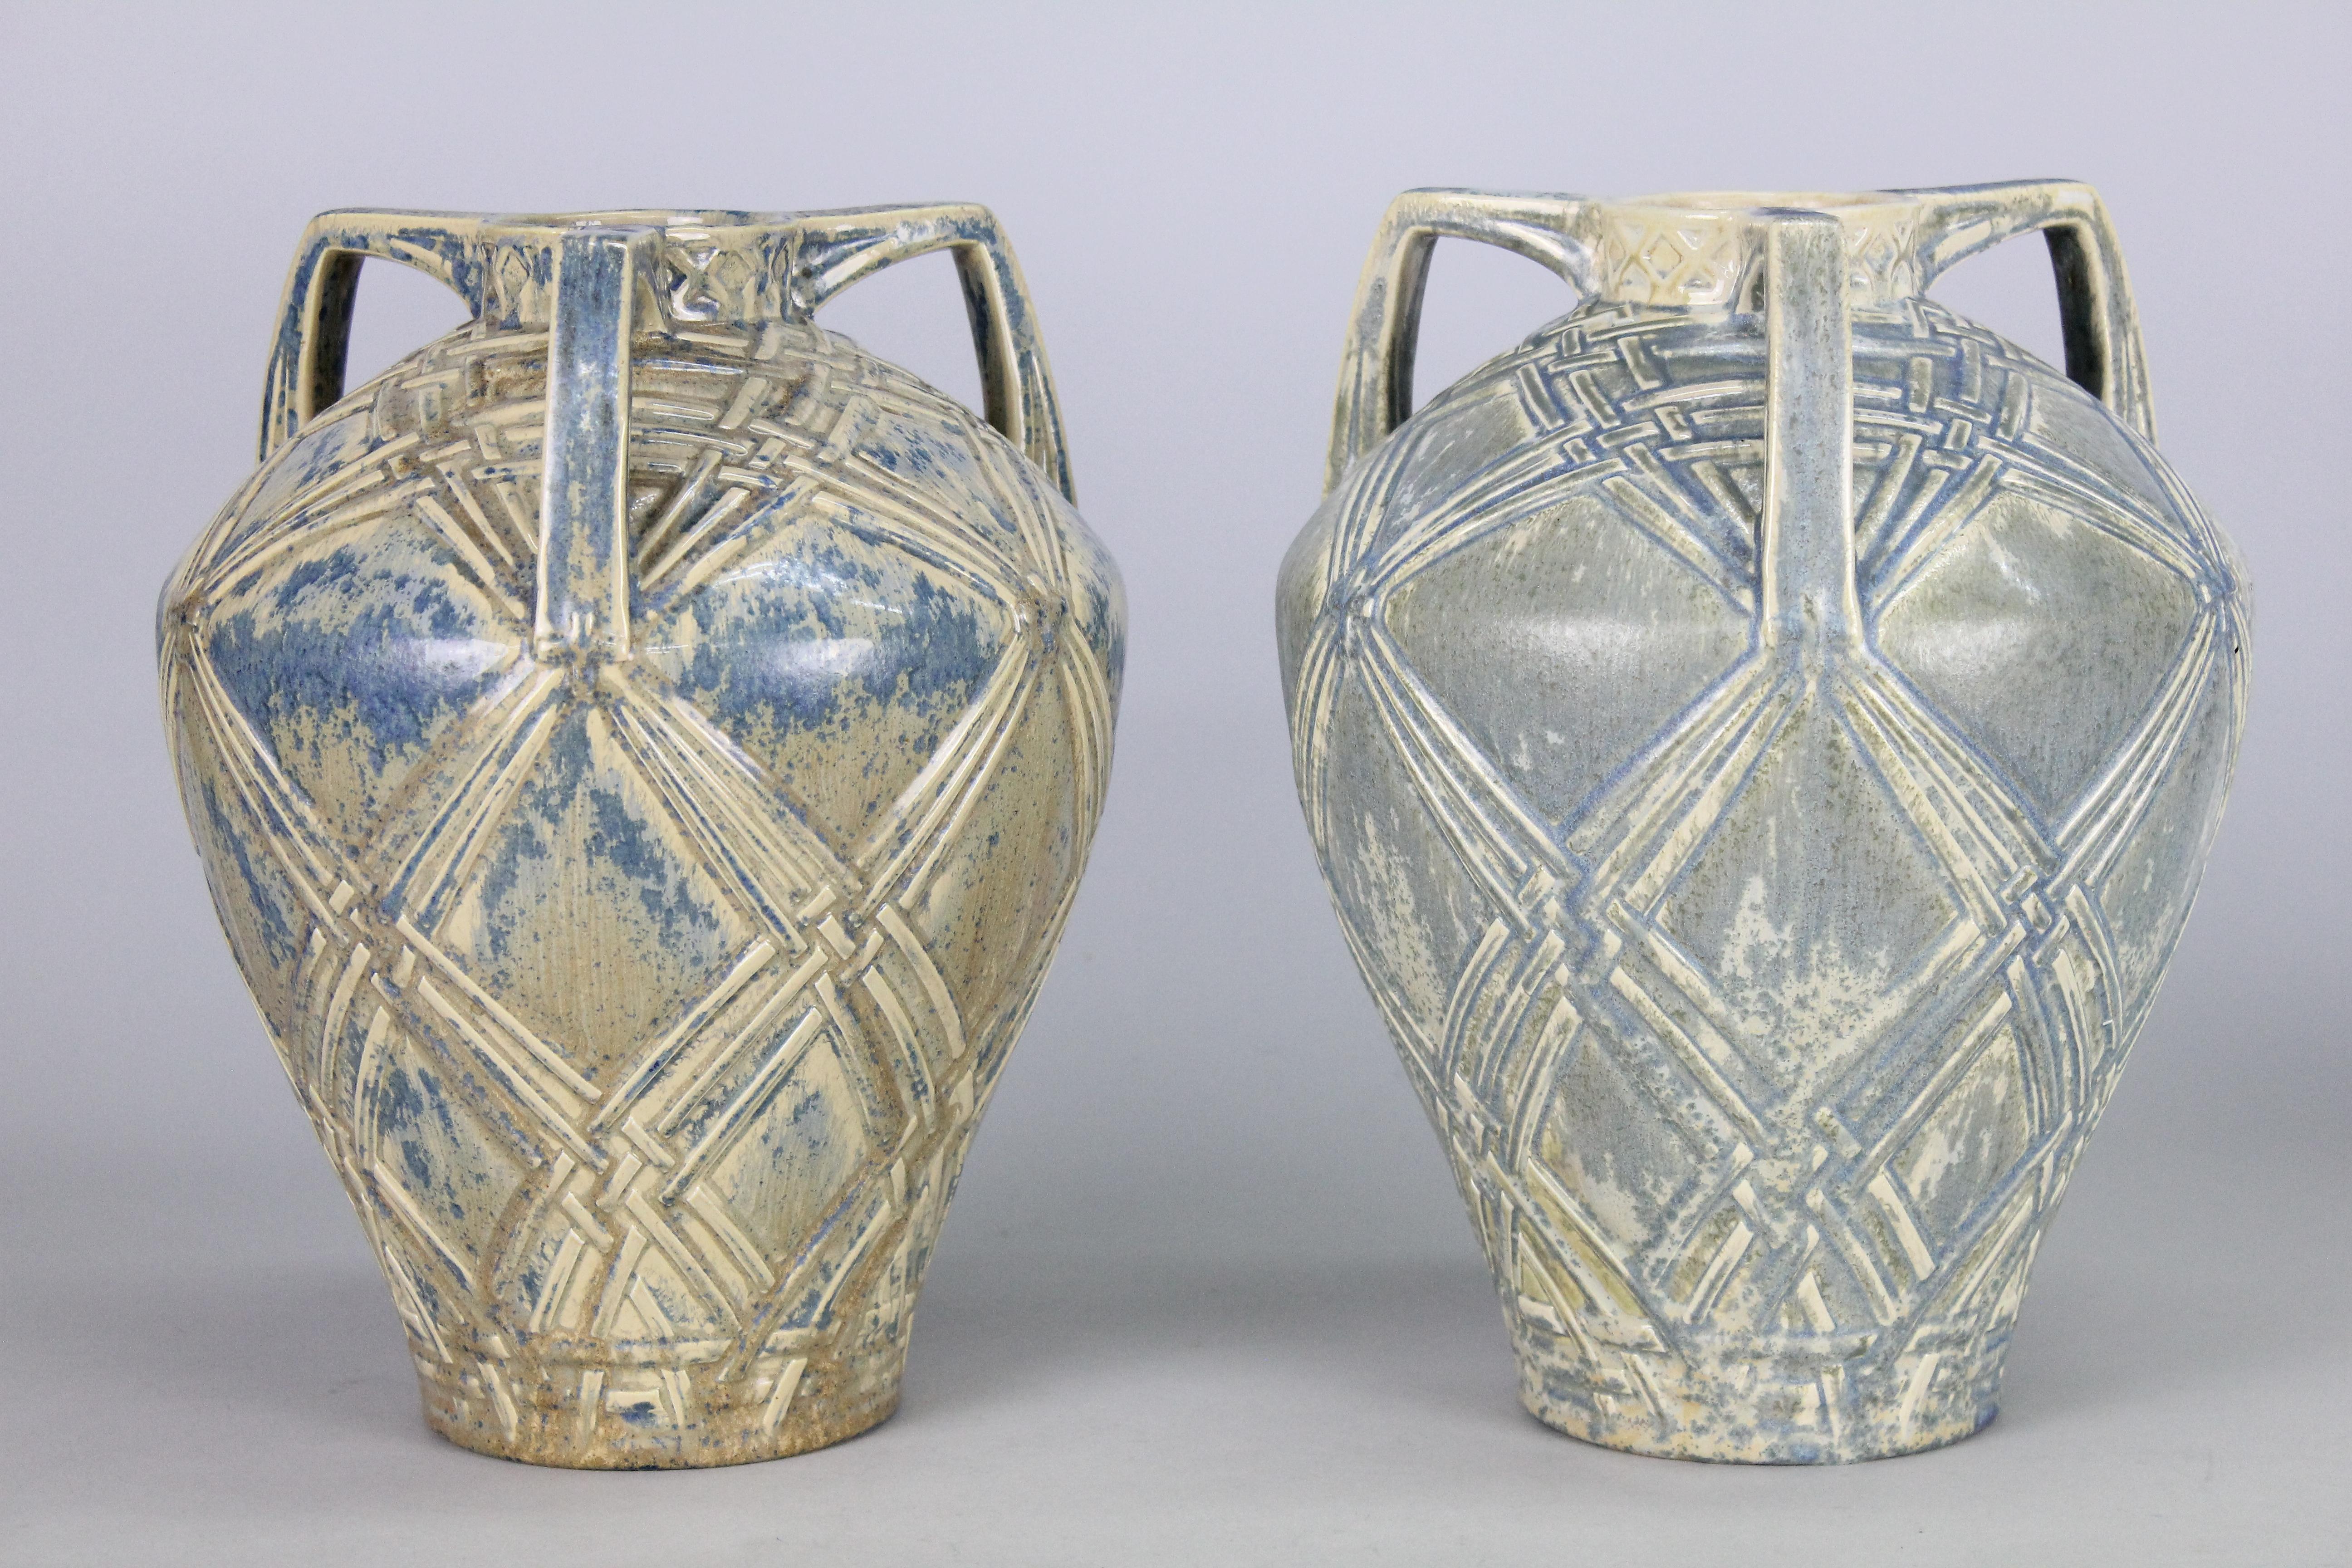 Une paire très inhabituelle de vases Rörstrand en faïence. Fabriqué entre 1920 et 1936.
Très probablement conçu par Alf Wallander. Quelques différences mineures dans la couleur de la glaçure.
Signé avec la marque d'usine 